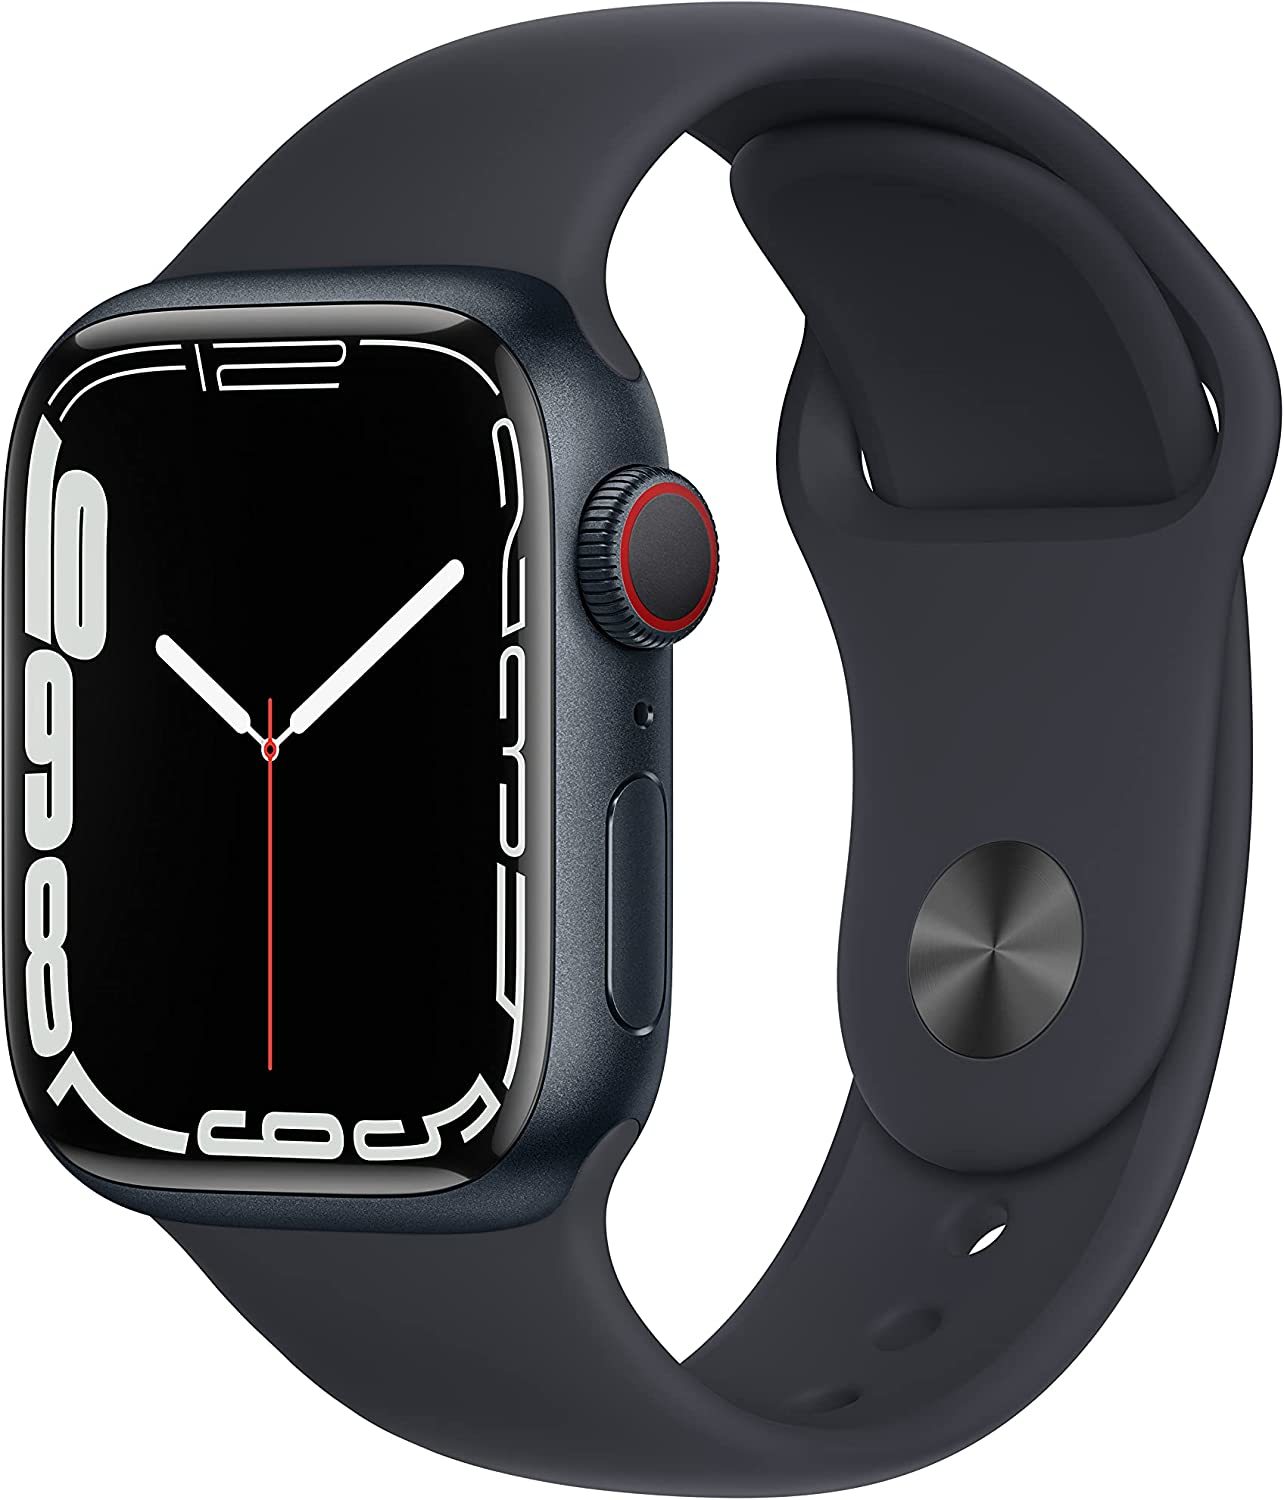 お気にいる Apple Watch スポーツバンド ブラック×グレー シリコン 防水 ozolgunticaret.com